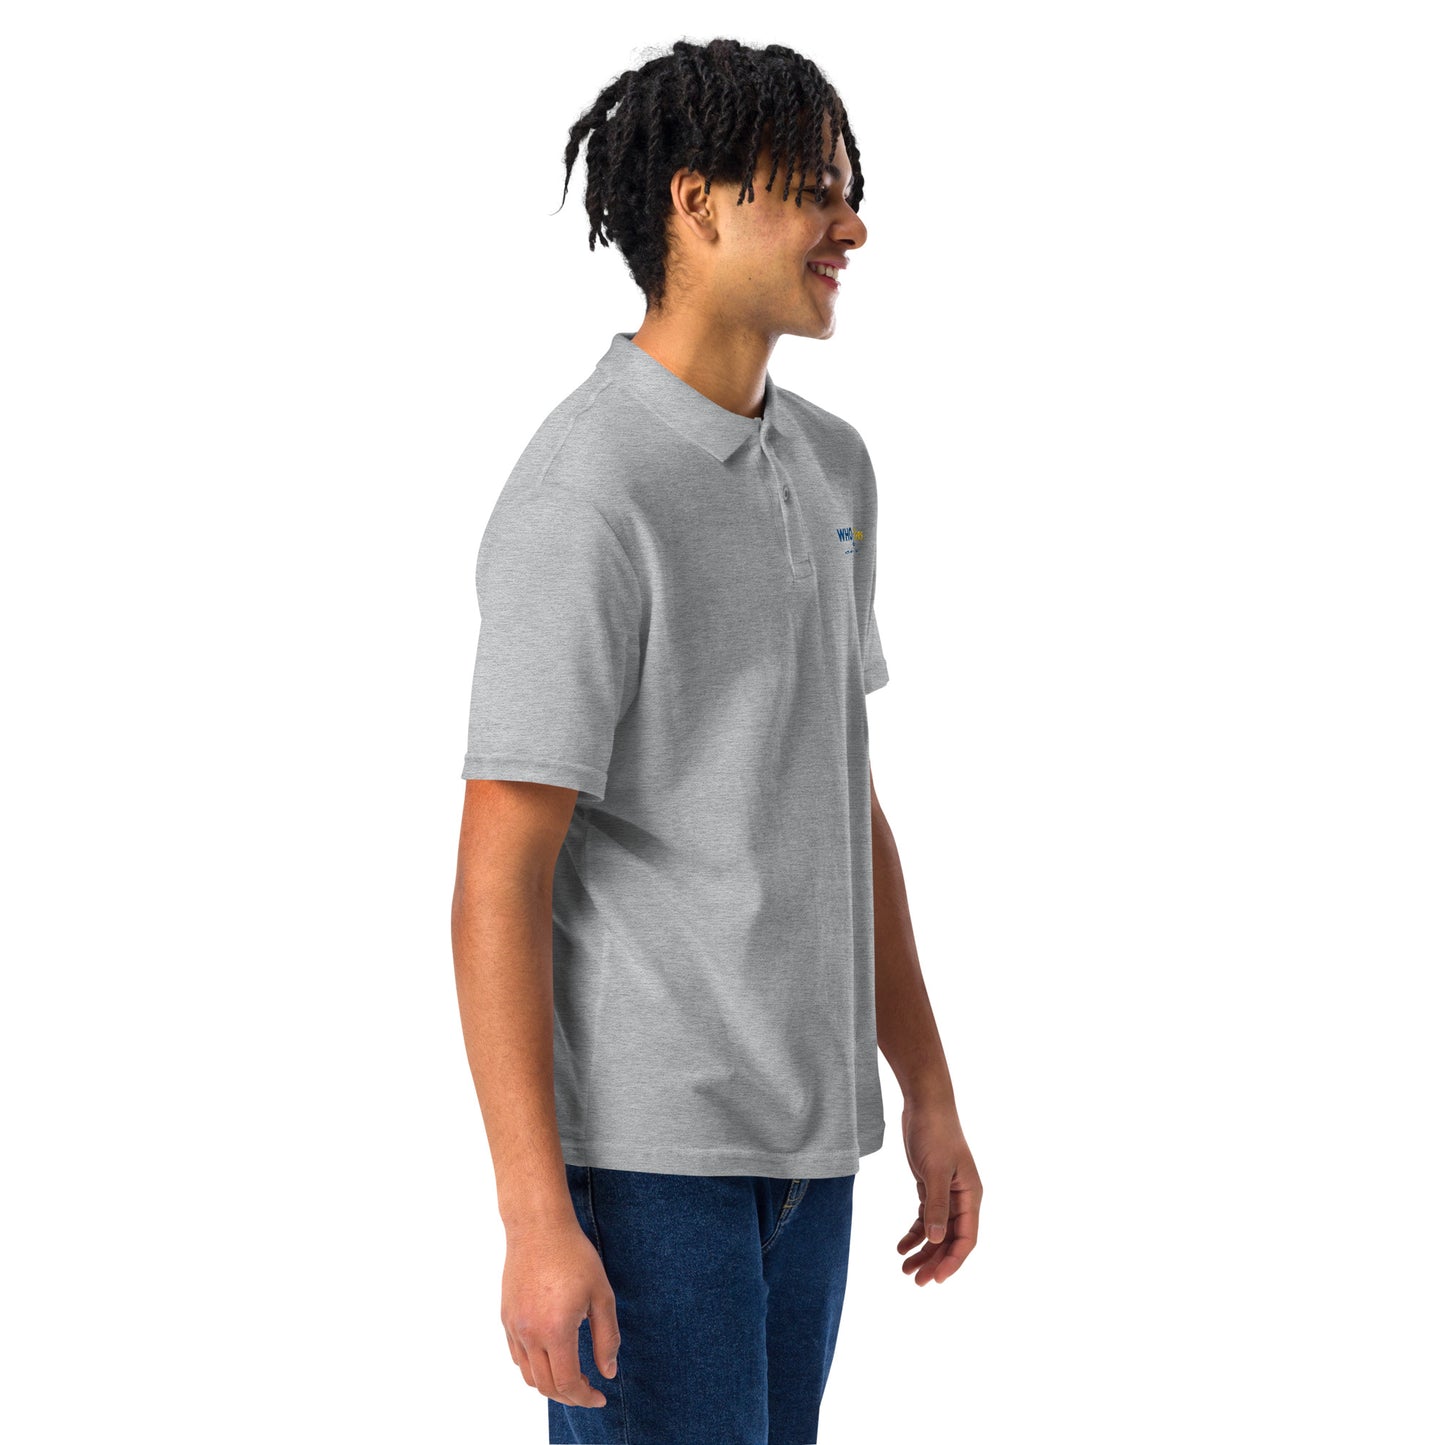 Polo shirt (unisex) | gray & white